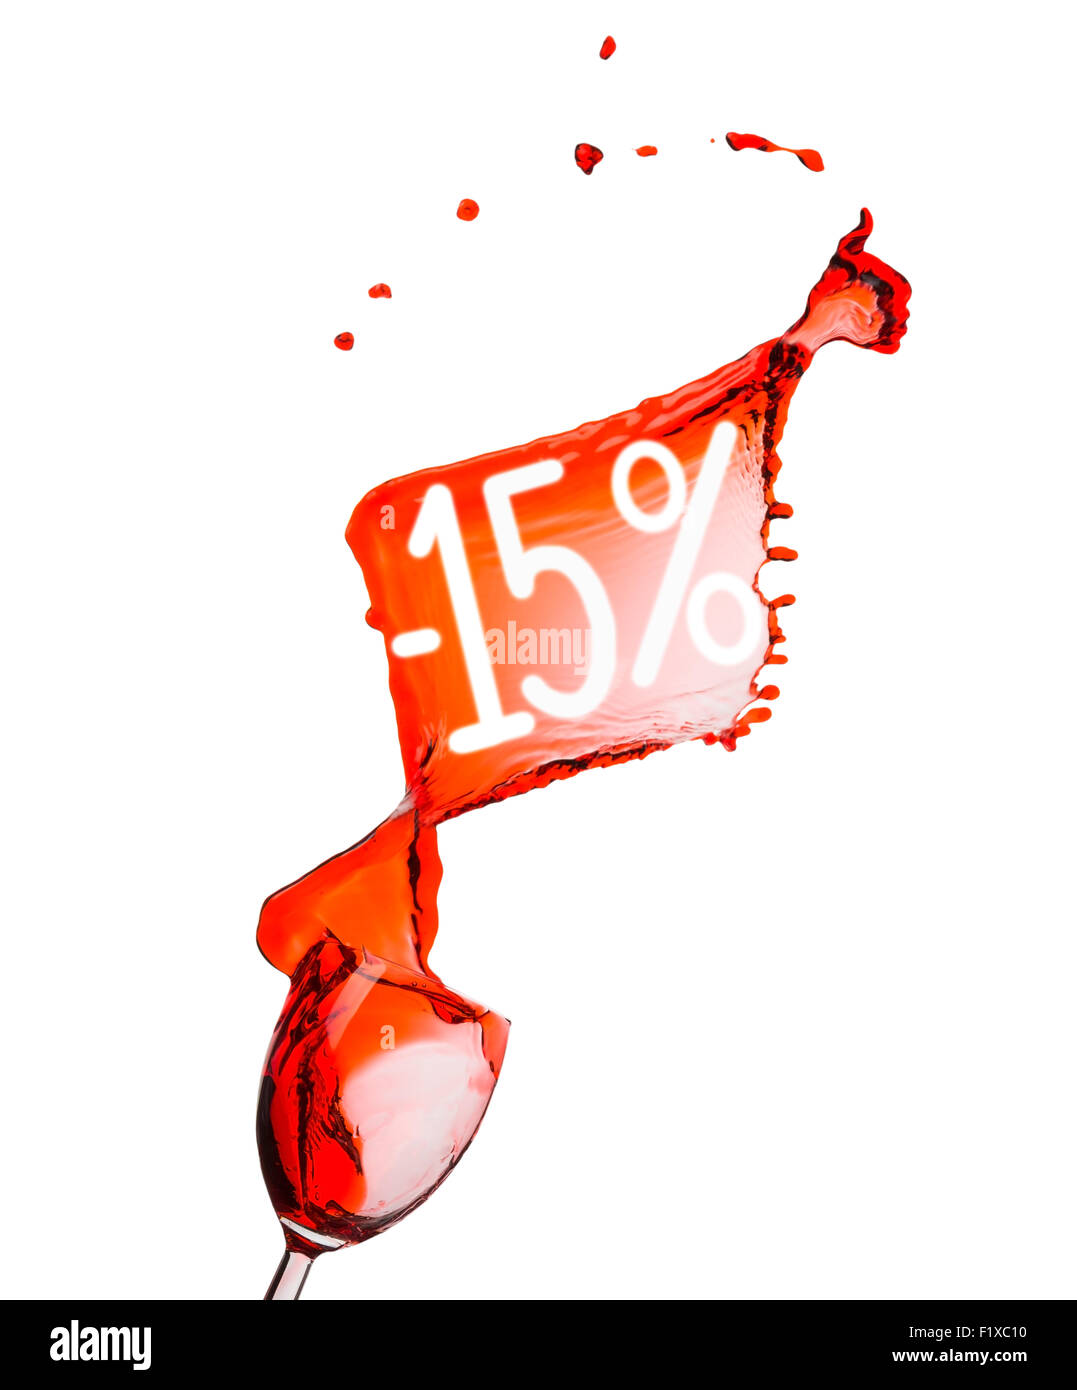 Vino rosso splash. 15 percento di sconto. Isolato su sfondo bianco. Foto Stock